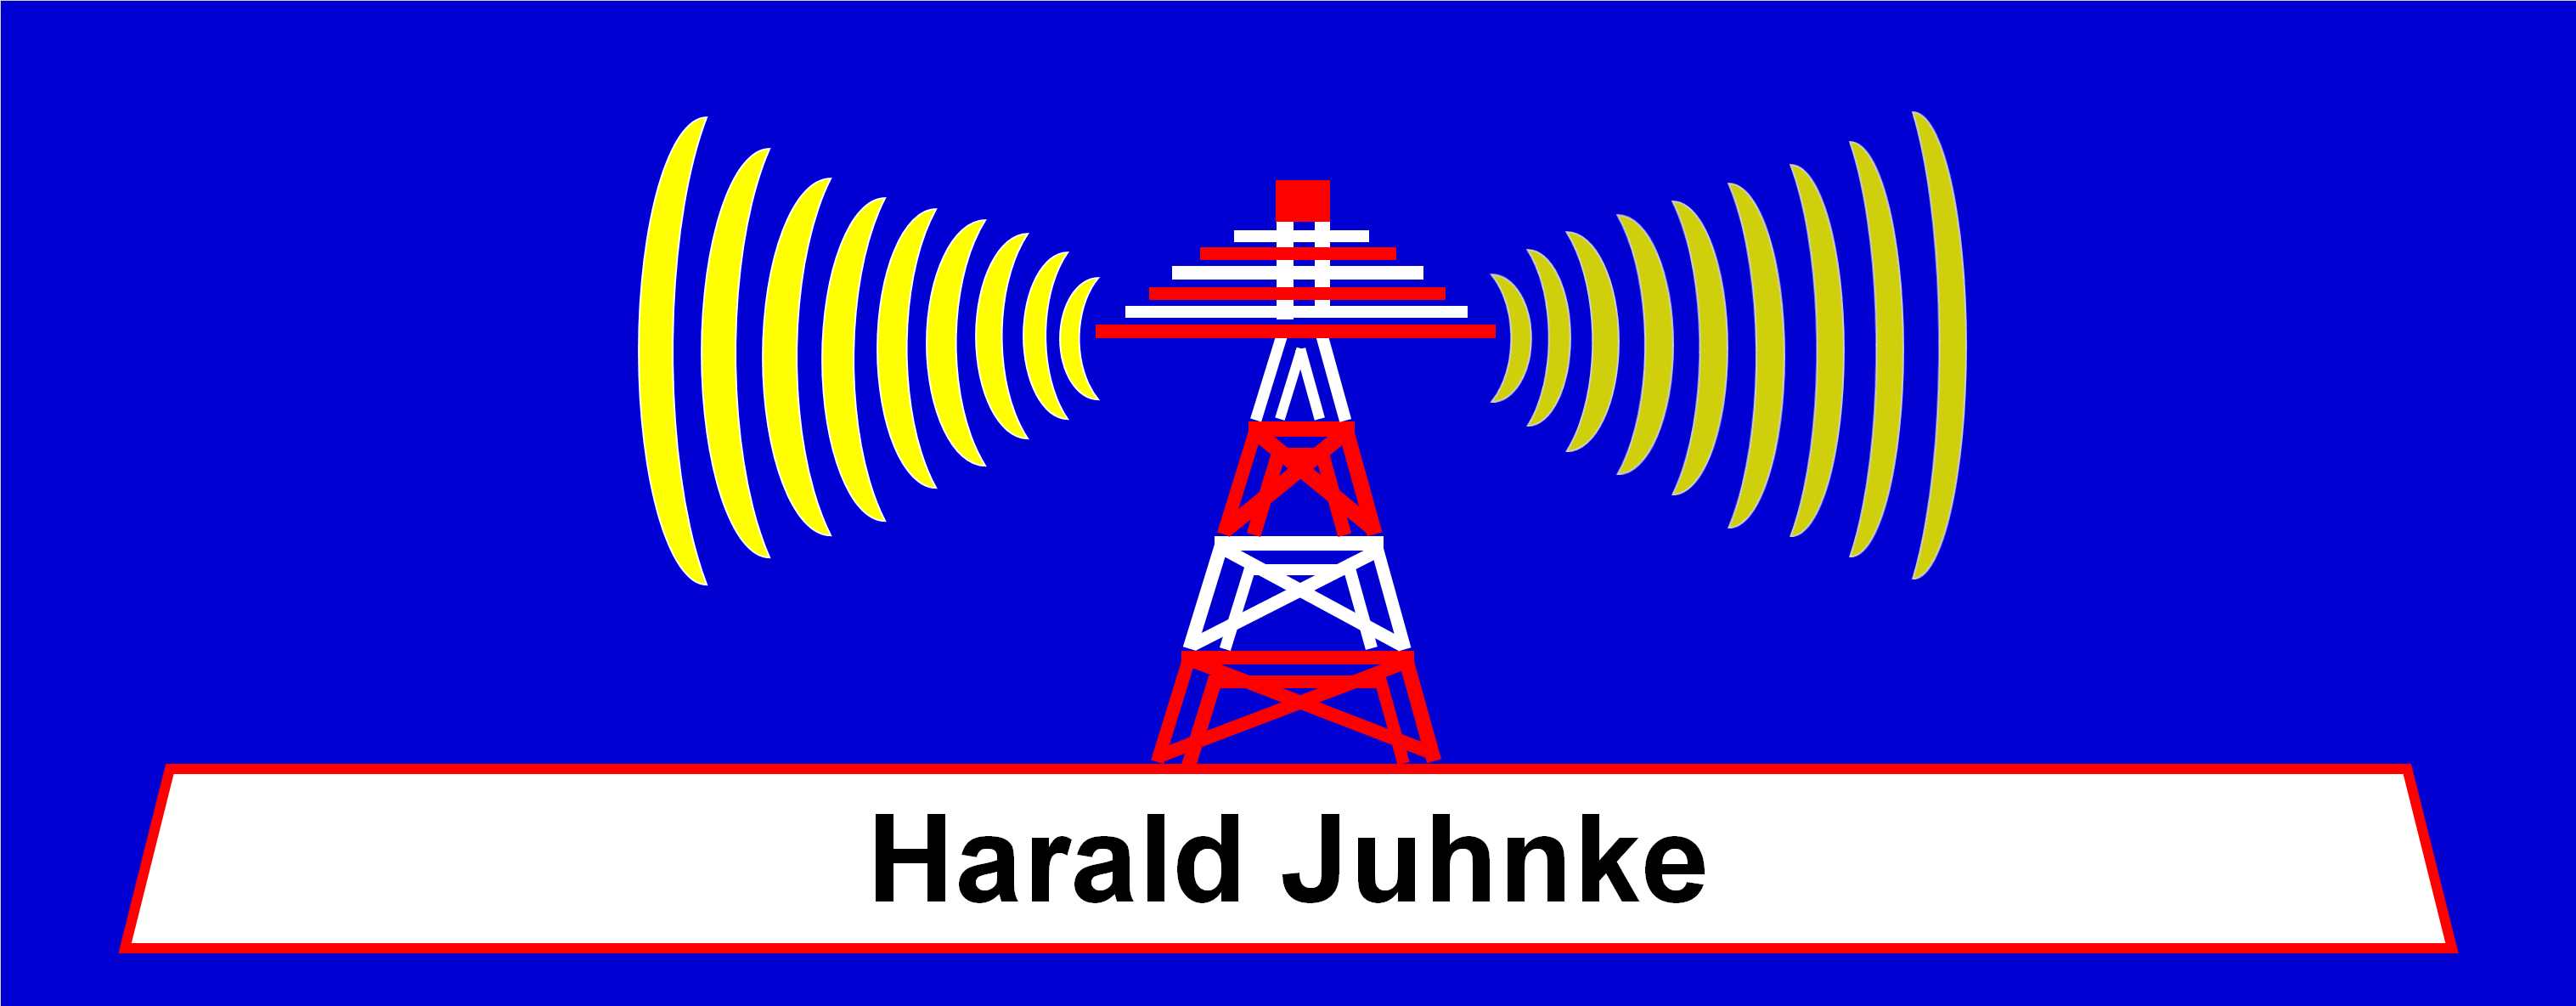 Harald Juhnke